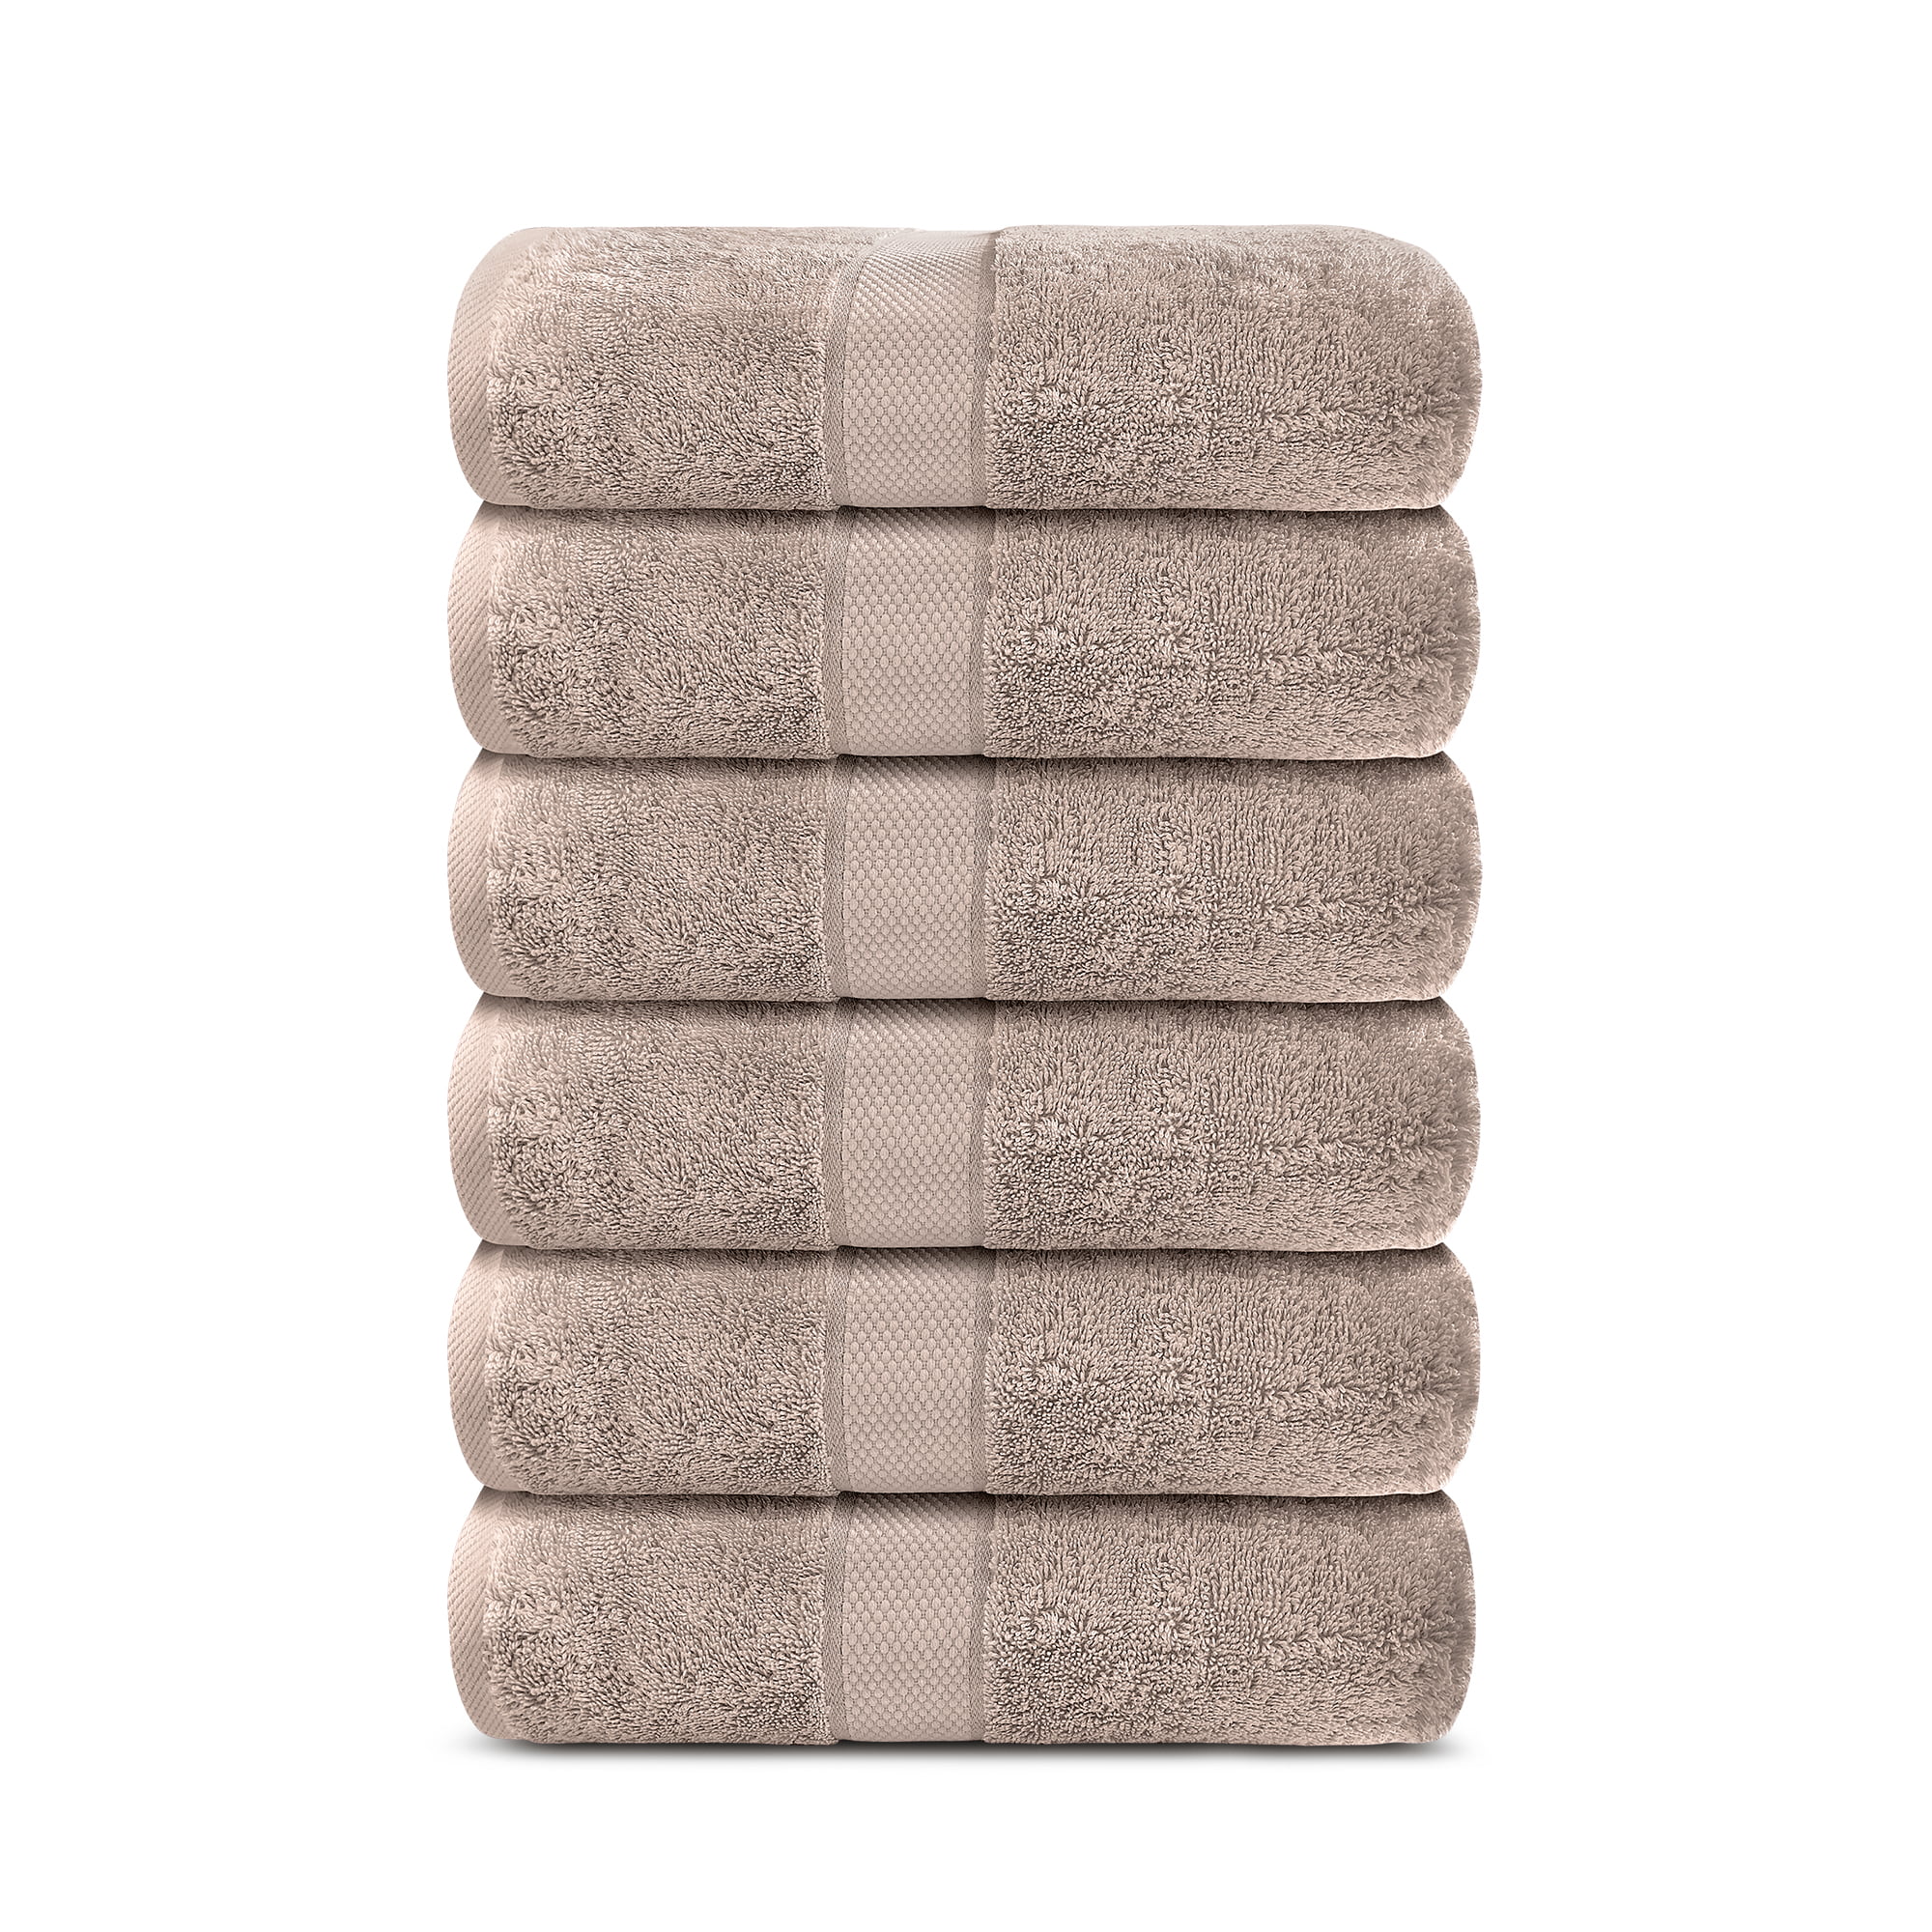 Details about   Lavish Touch 100% Cotton Aerocore Towels Pack 